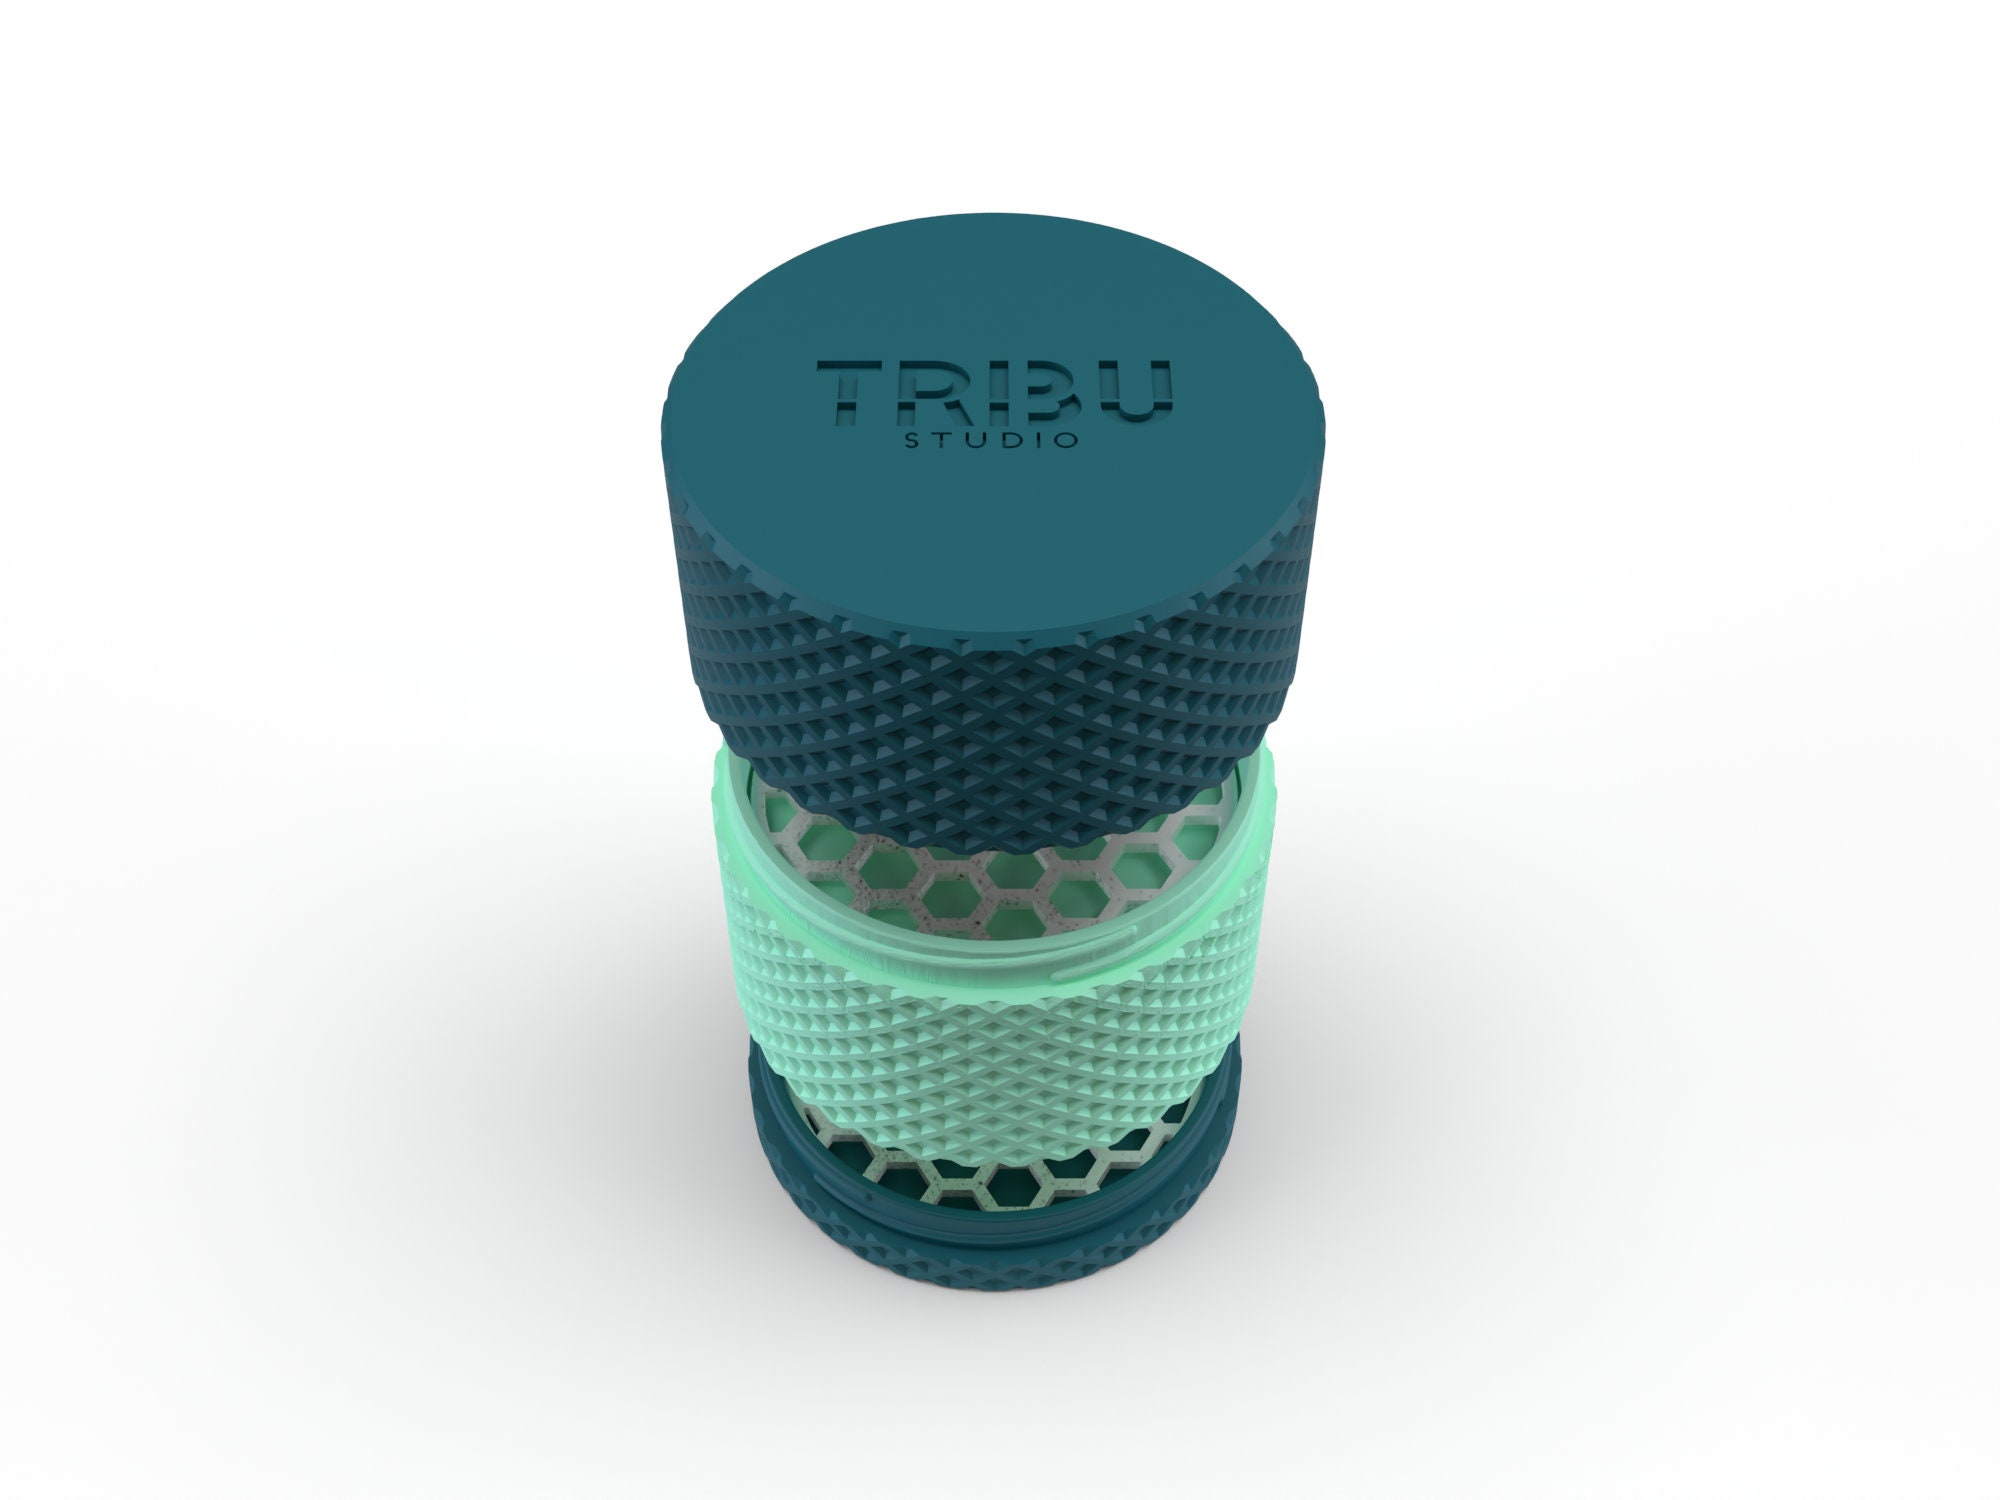 Boîte à savon ronde personnalisable / boîte de transport pour cosmétique  solide / cadeau personnalisé / impression 3D -  France